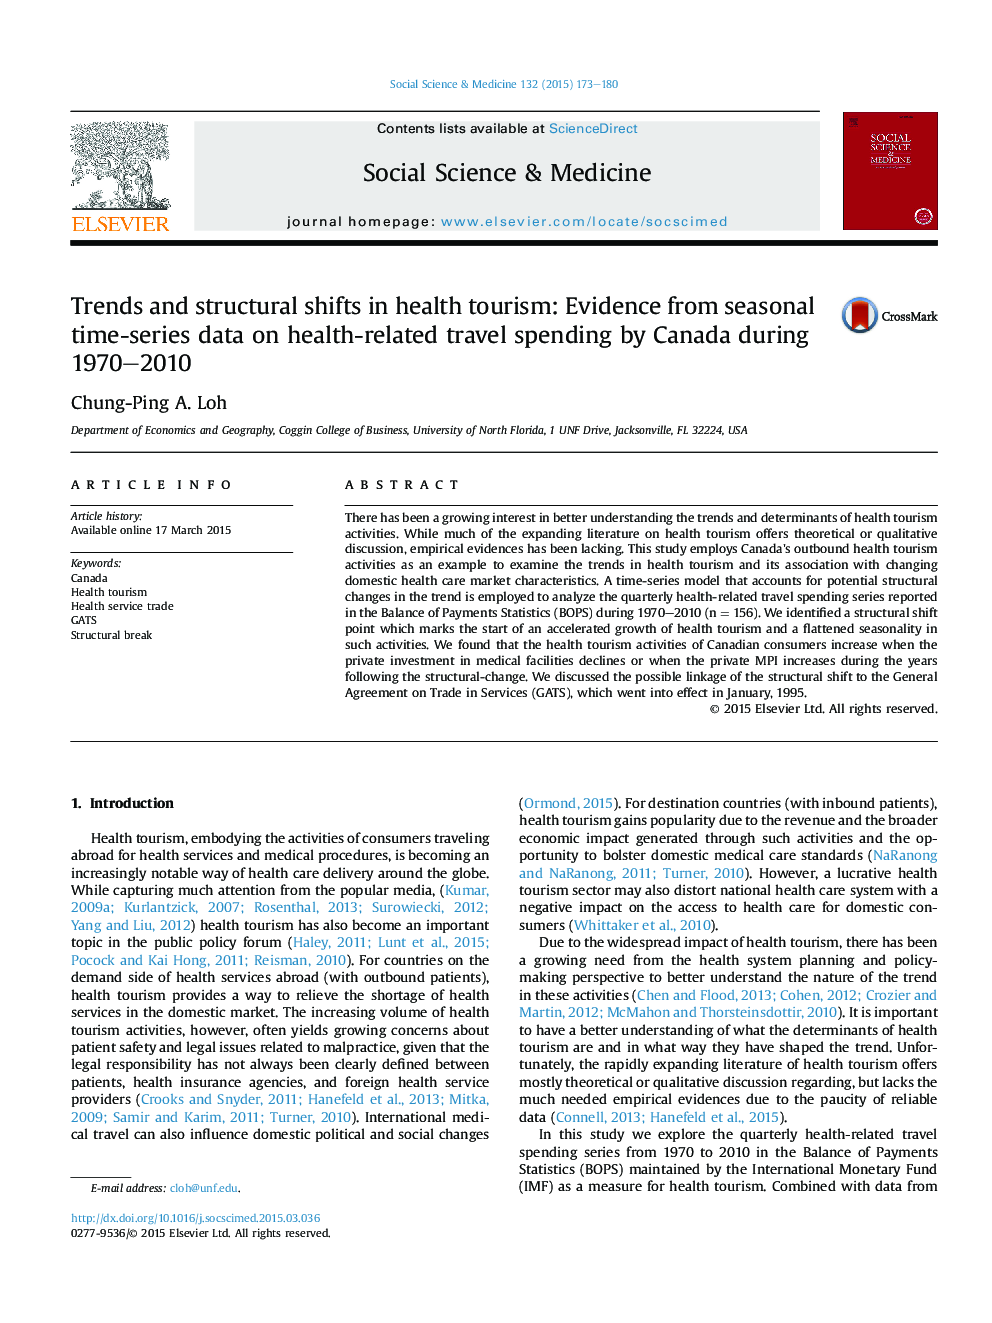 روند و تغییرات ساختاری در گردشگری بهداشتی: شواهد حاصل از داده های سری زمانی فصلی مربوط به هزینه سفرهای مربوط به سلامت توسط کانادا طی سال های 1970 تا 2010 